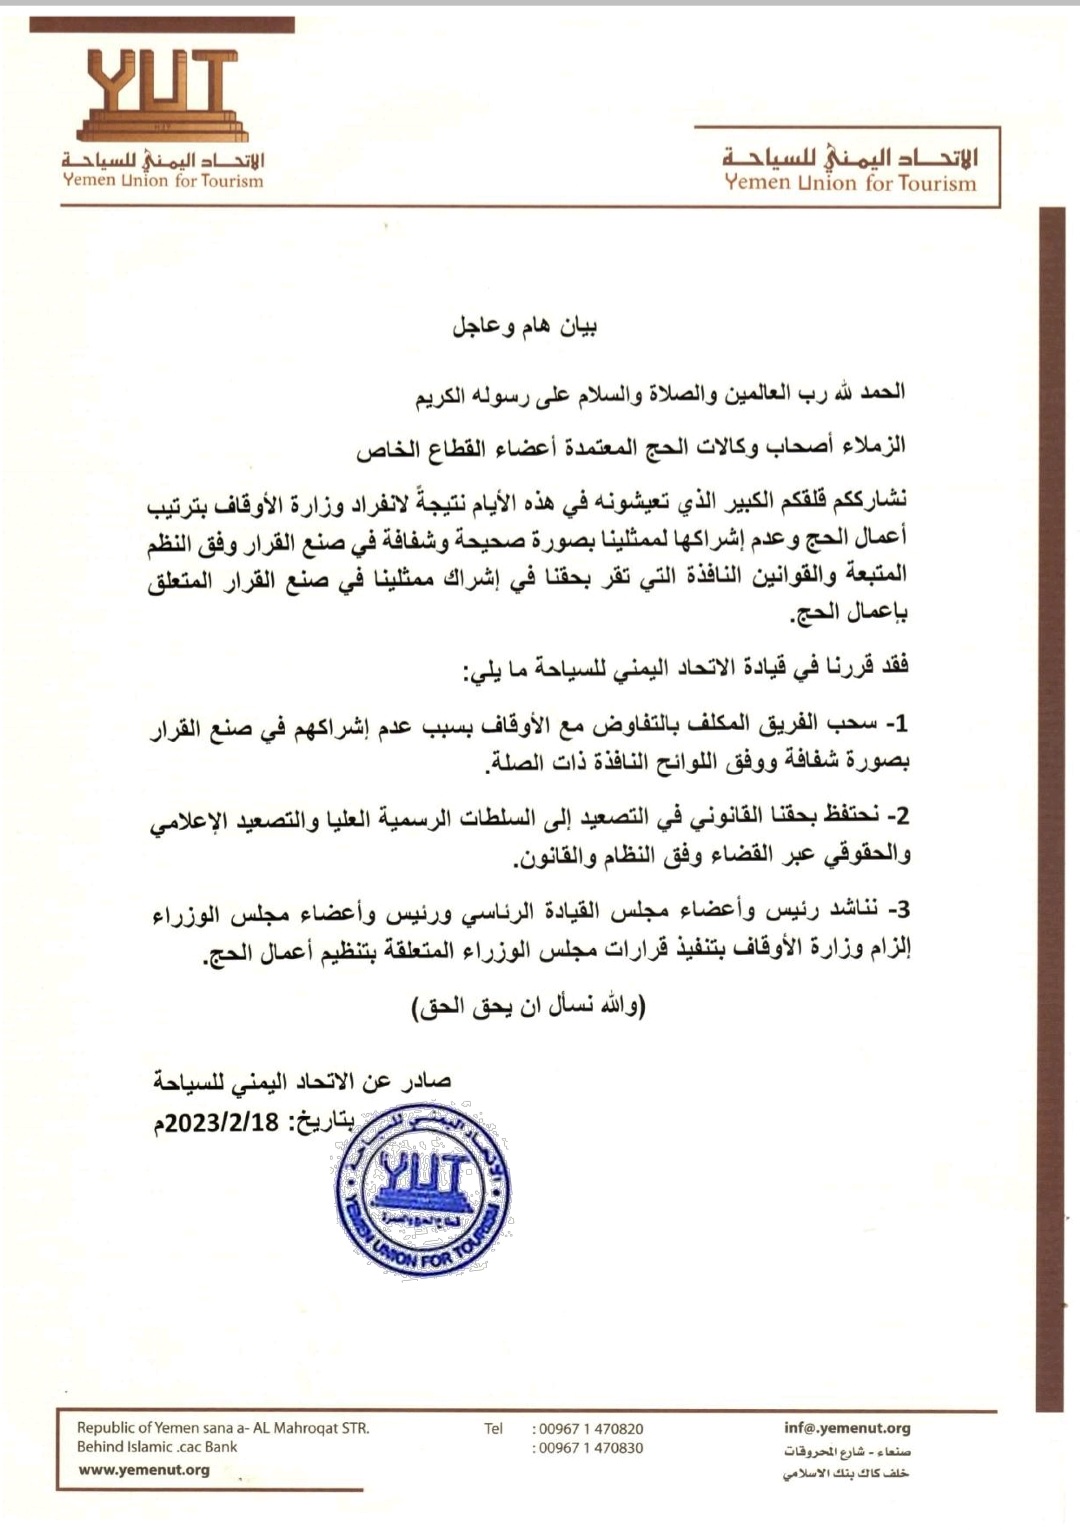 الاتحاد اليمني للسياحة يصدر بيان هام وعاجل